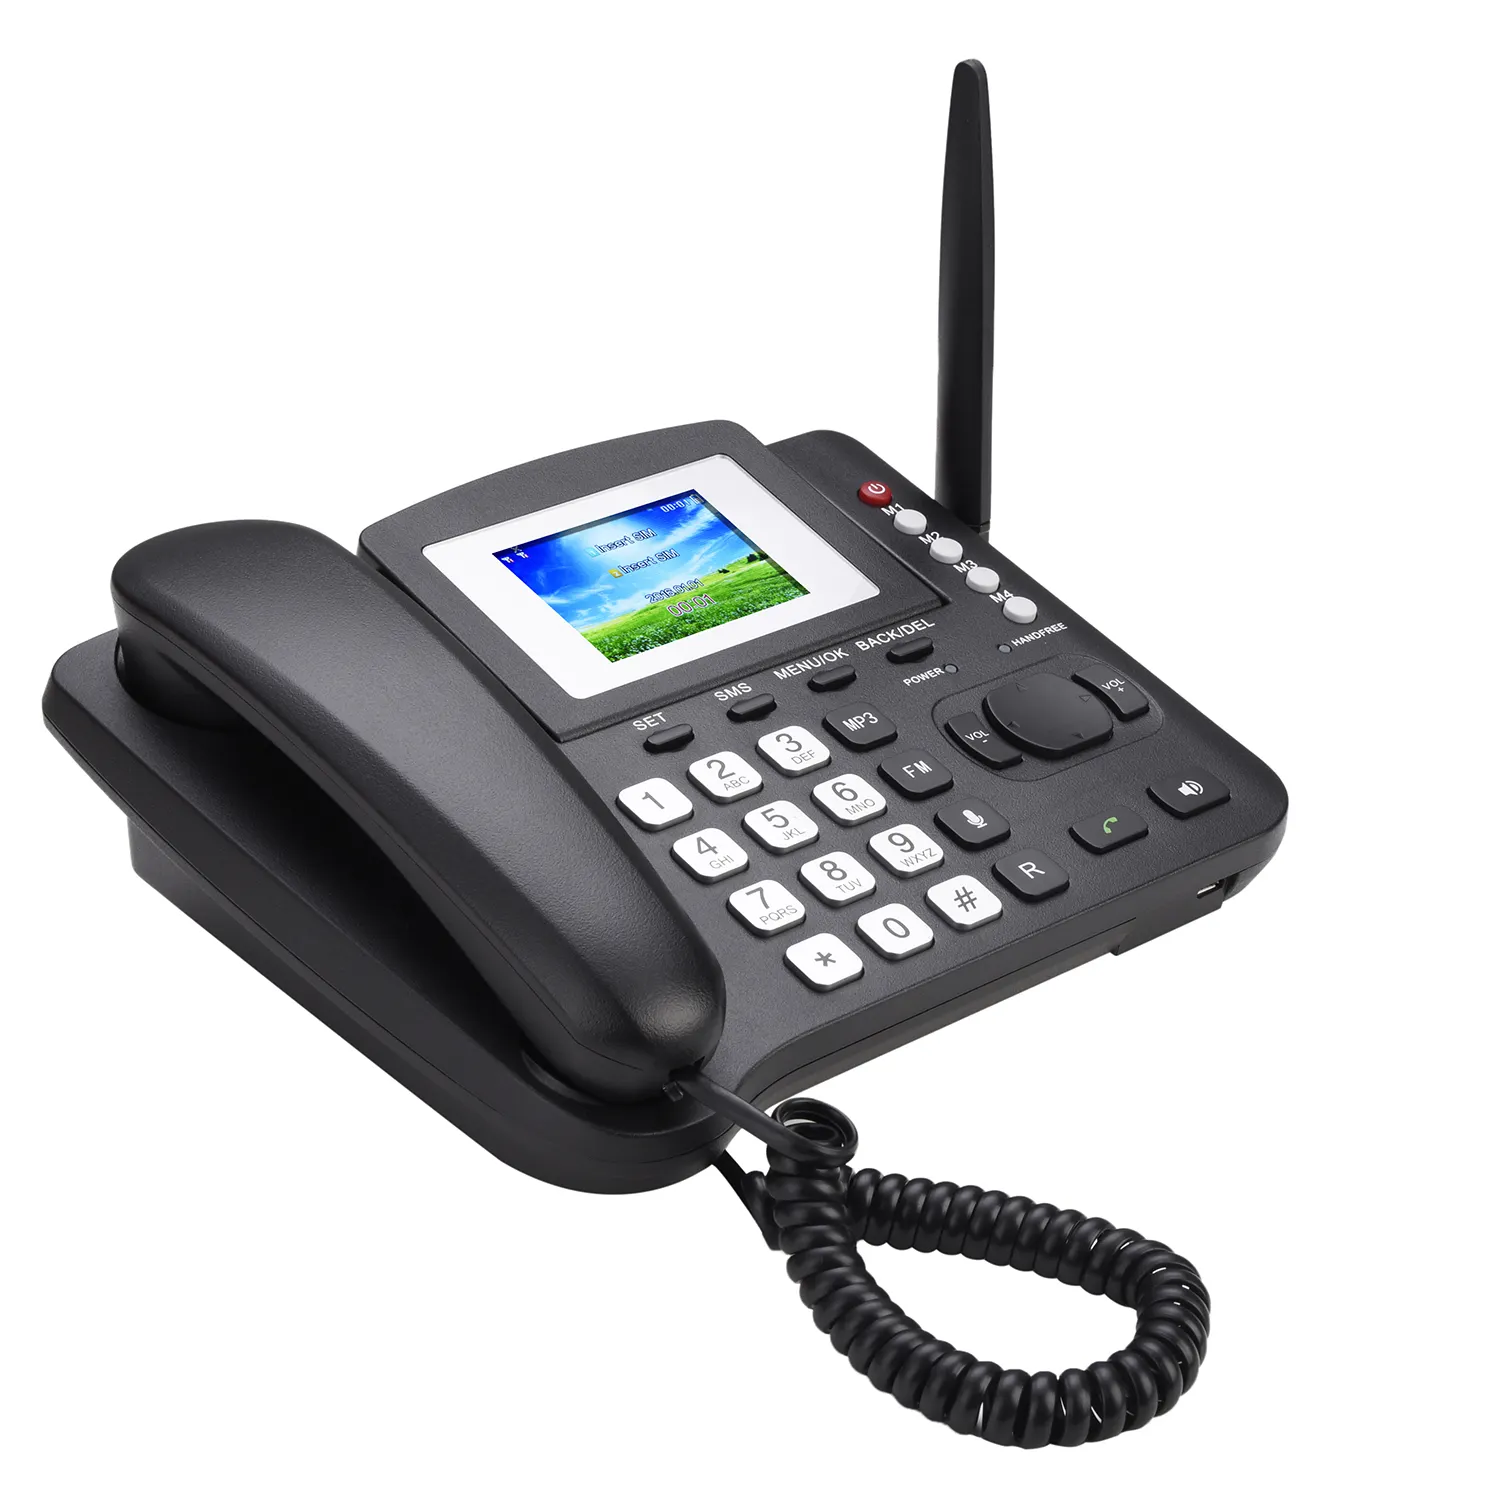 LS980 Oem Sim-kaart Sms Fm Radio Voor Home Office 2G Draadloze Telefoon Vaste Draadloze Telefoon